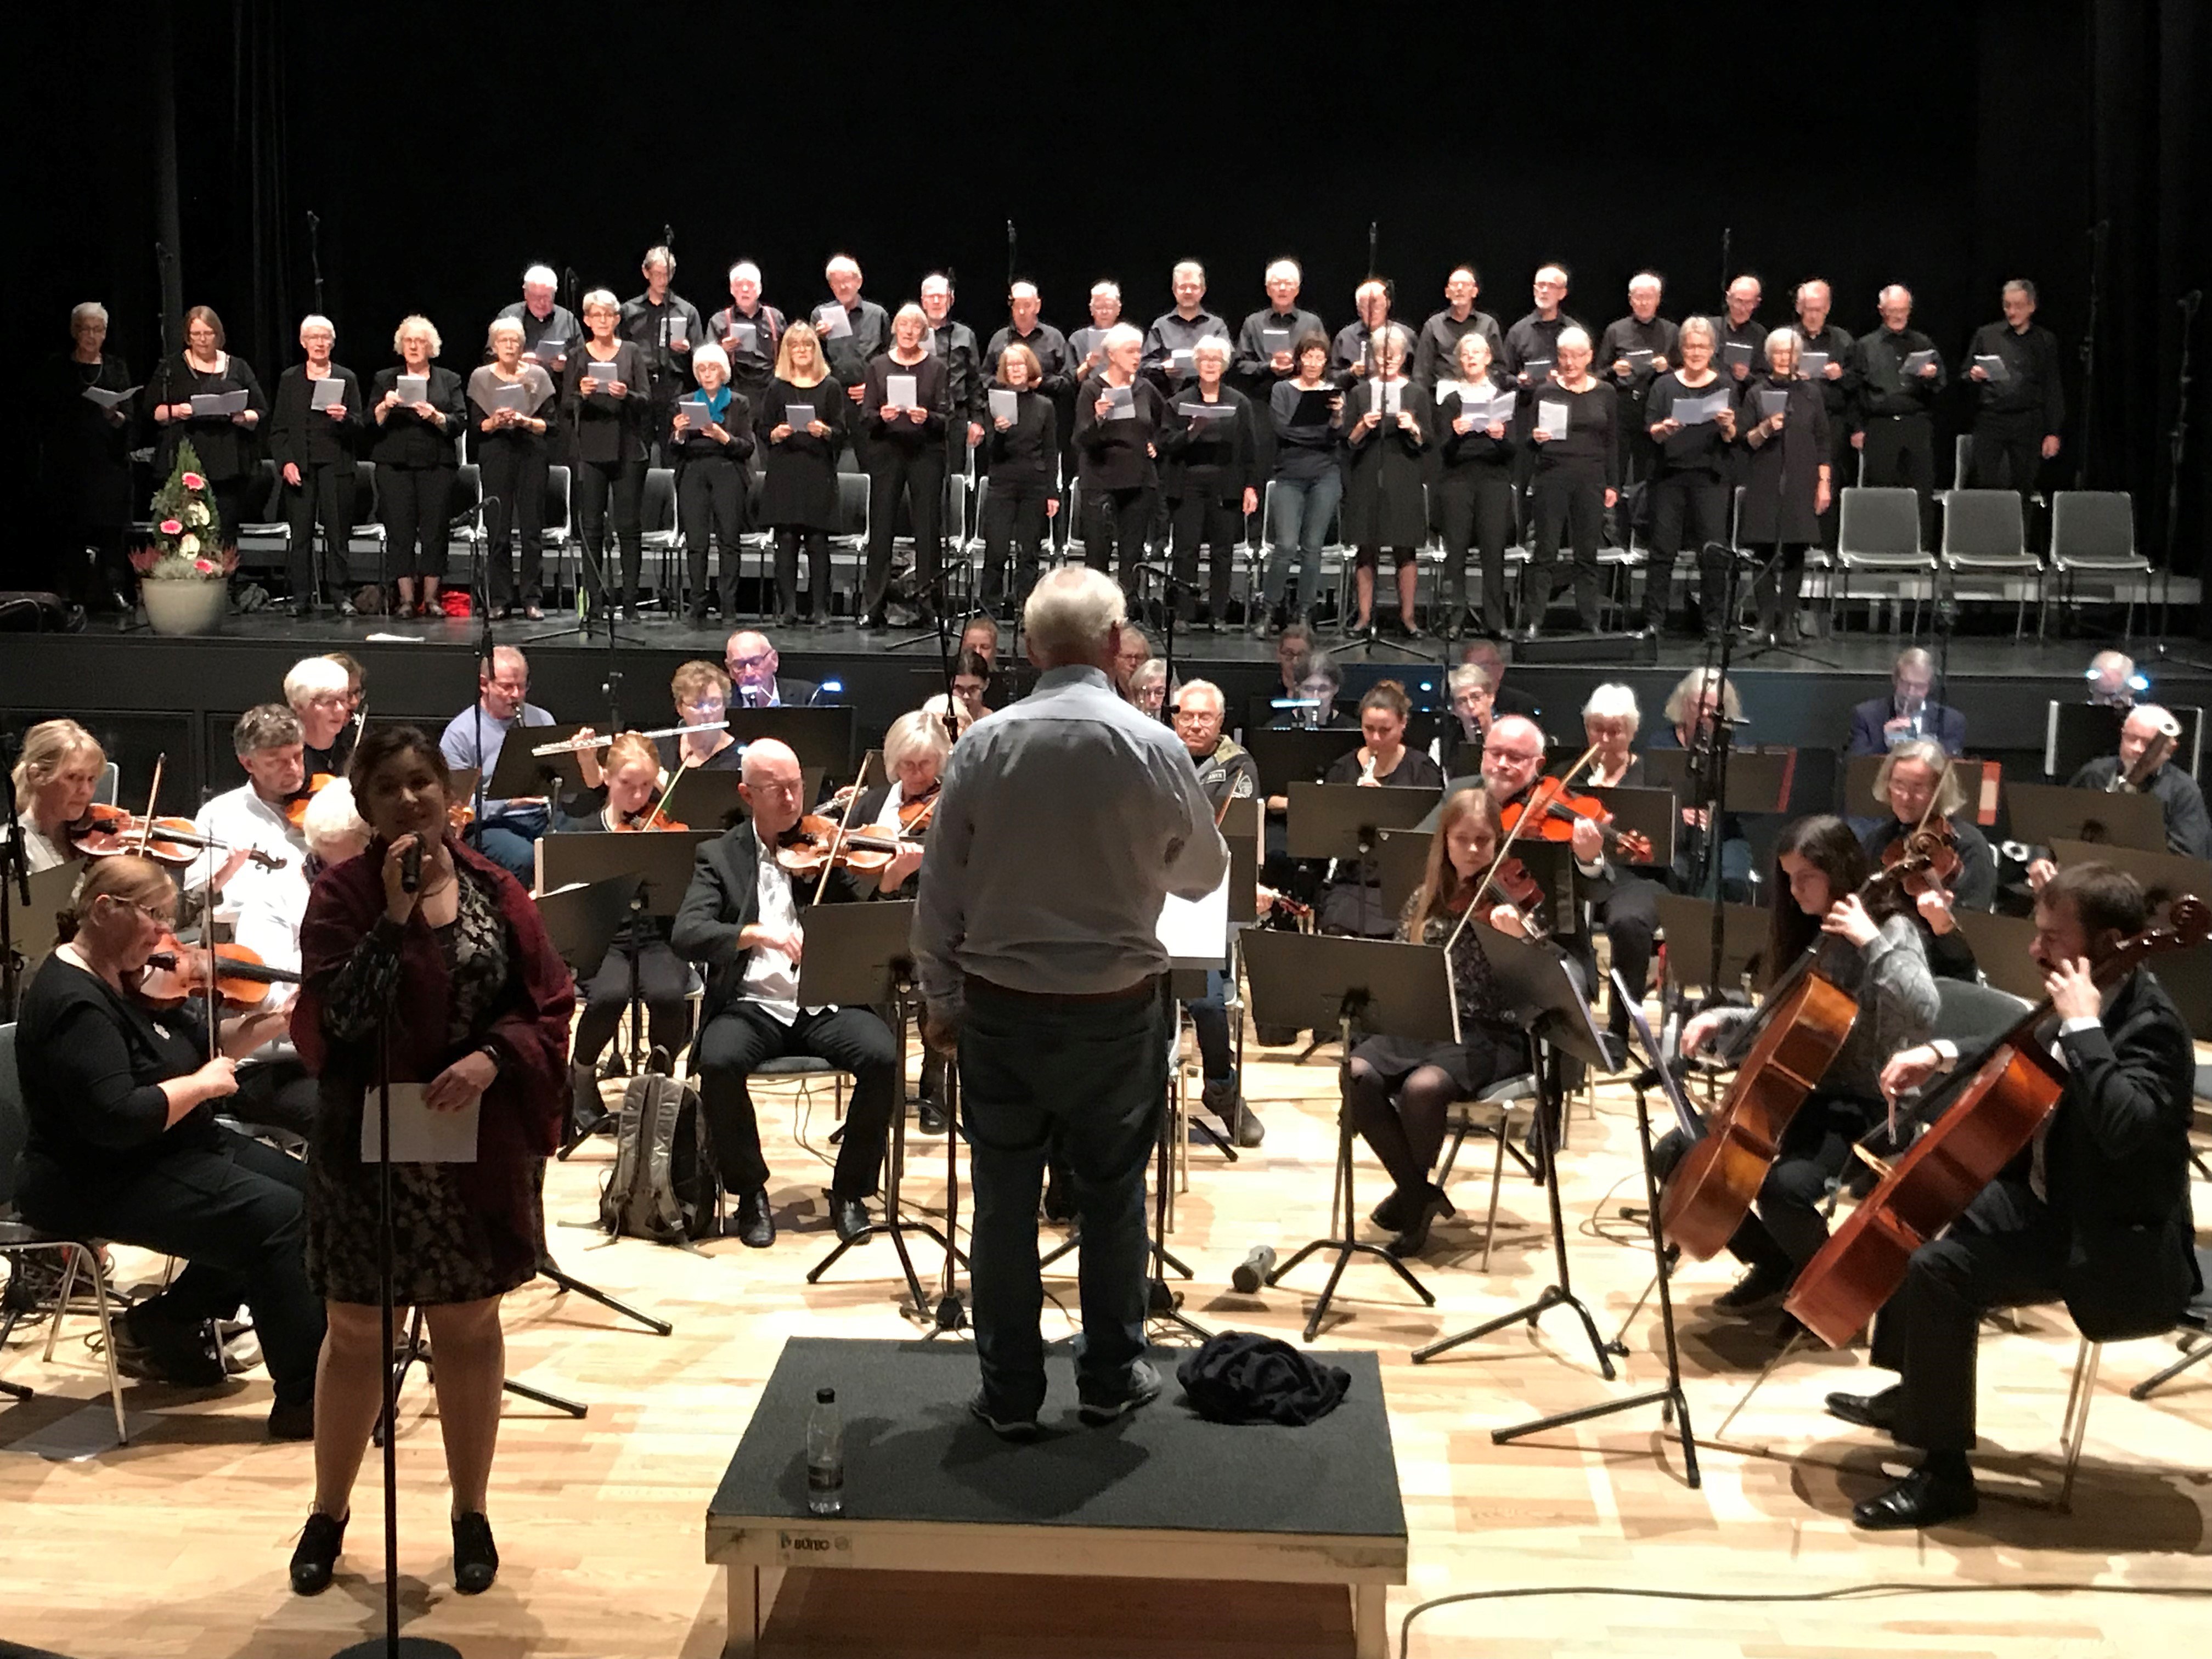 Mere end 200 optrædende musikere og korsangere er med på scenen i KulturCenter Skive, når kæmpeorkesteret ’Skive Symfoniorkester’ indbyder til gratis koncert.